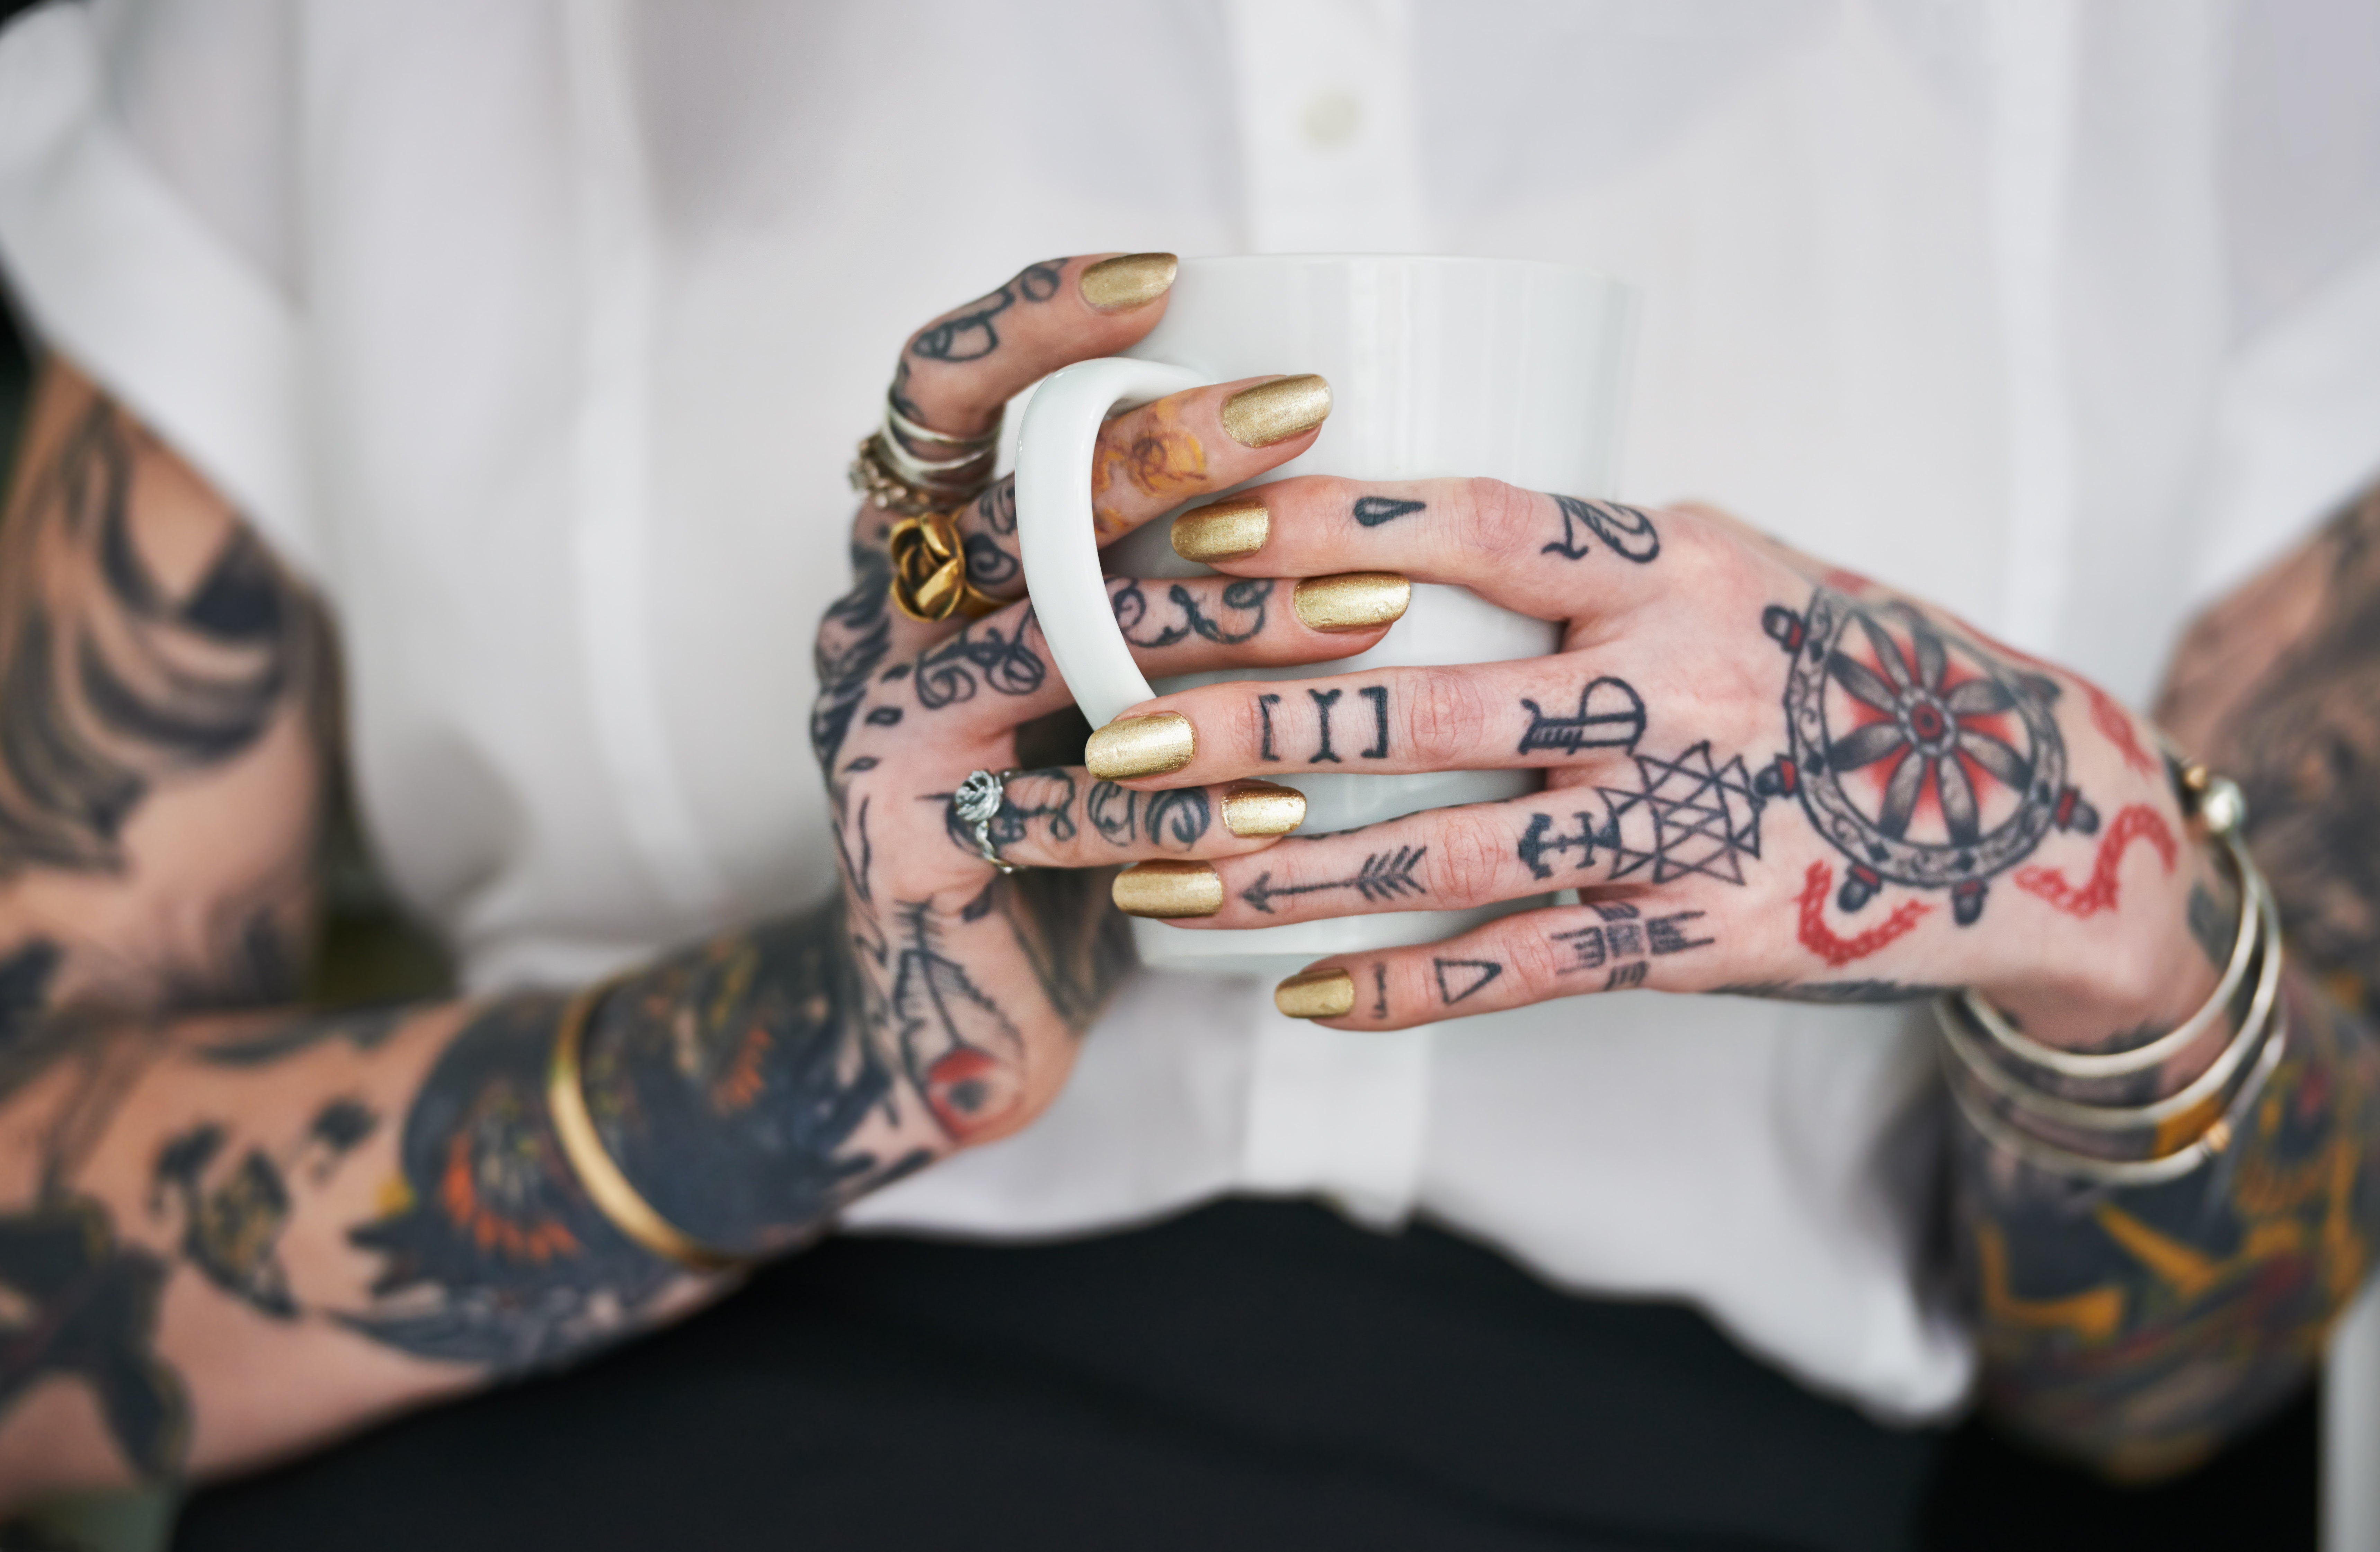 Marilyn Manson Tattoo by Lindsay Budge  ArtWantedcom